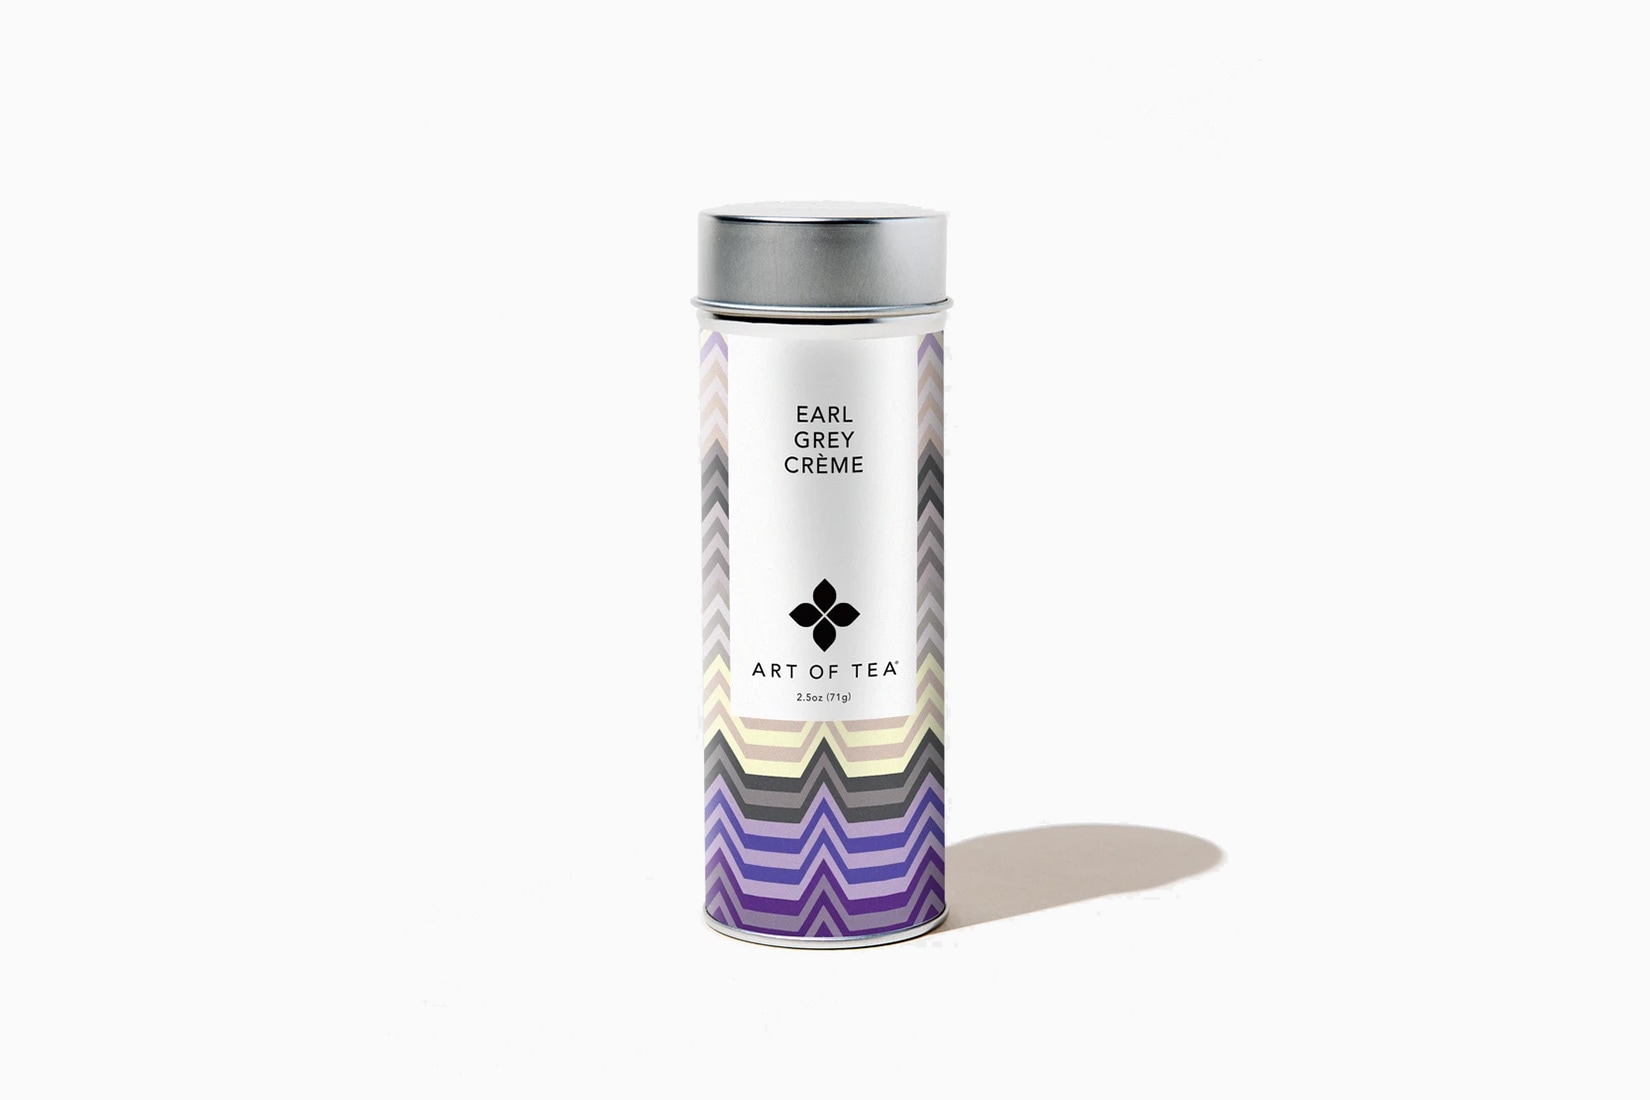 best tea brands art of tea earl grey - Luxe Digital